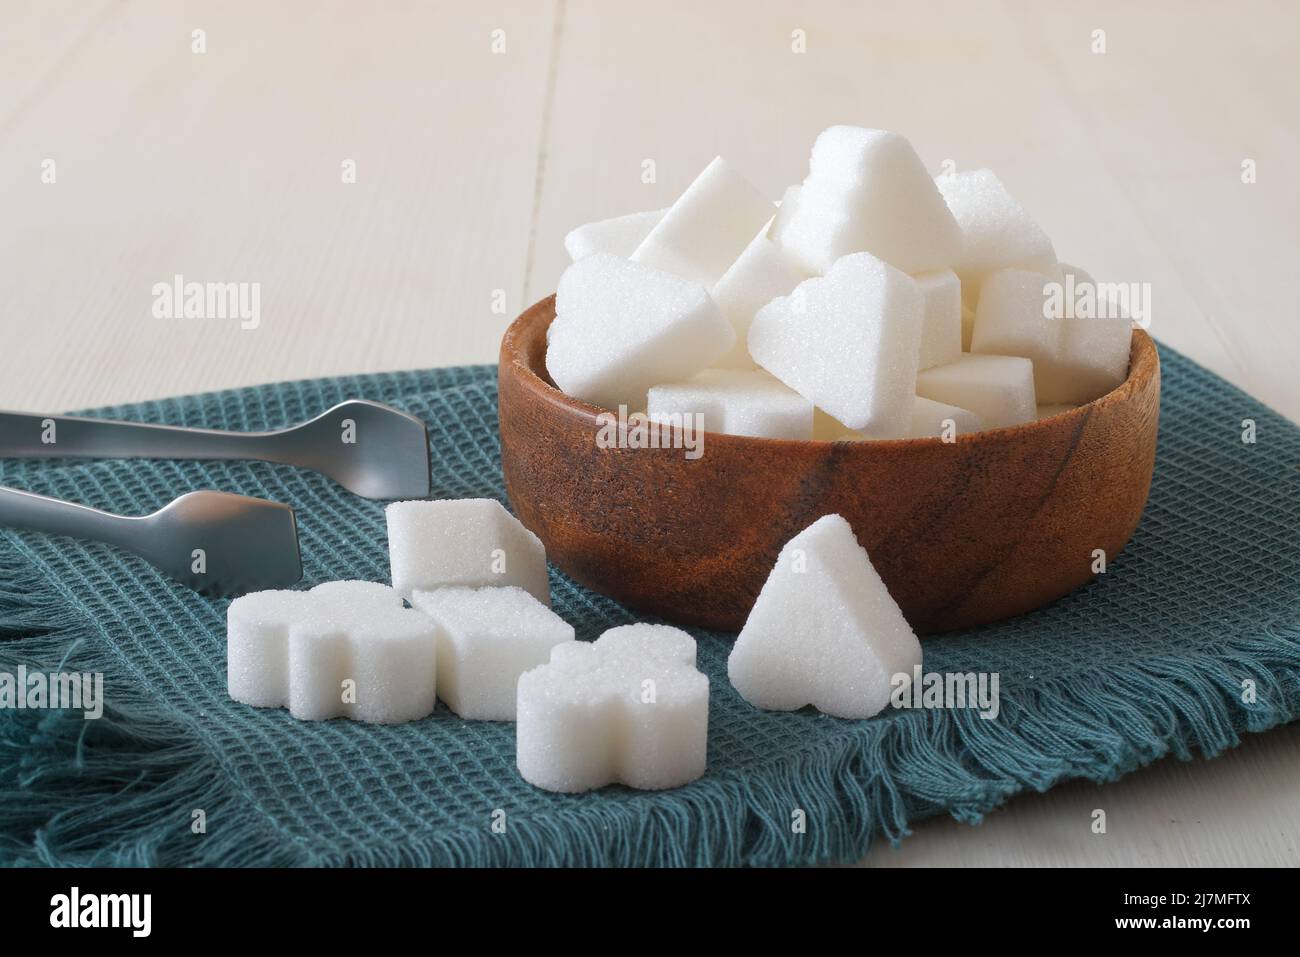 Cubetti di zucchero a forma di ponte in ciotola di legno su un tovagliolo turchese con pinze di zucchero d'argento. Primo piano, tavolo bianco in legno, niente persone. Foto Stock